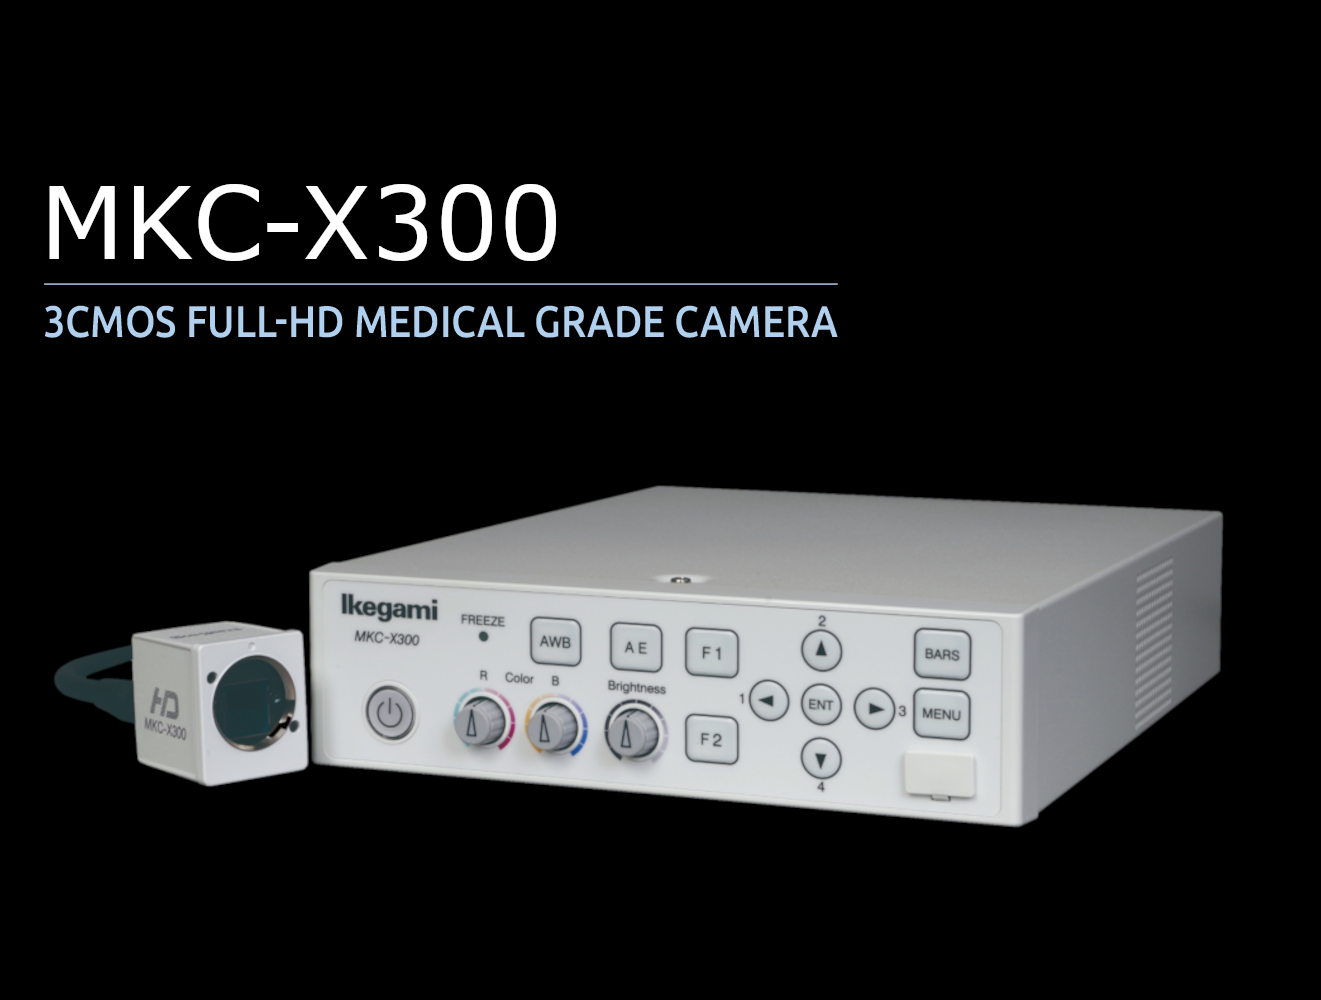 MKC-X300